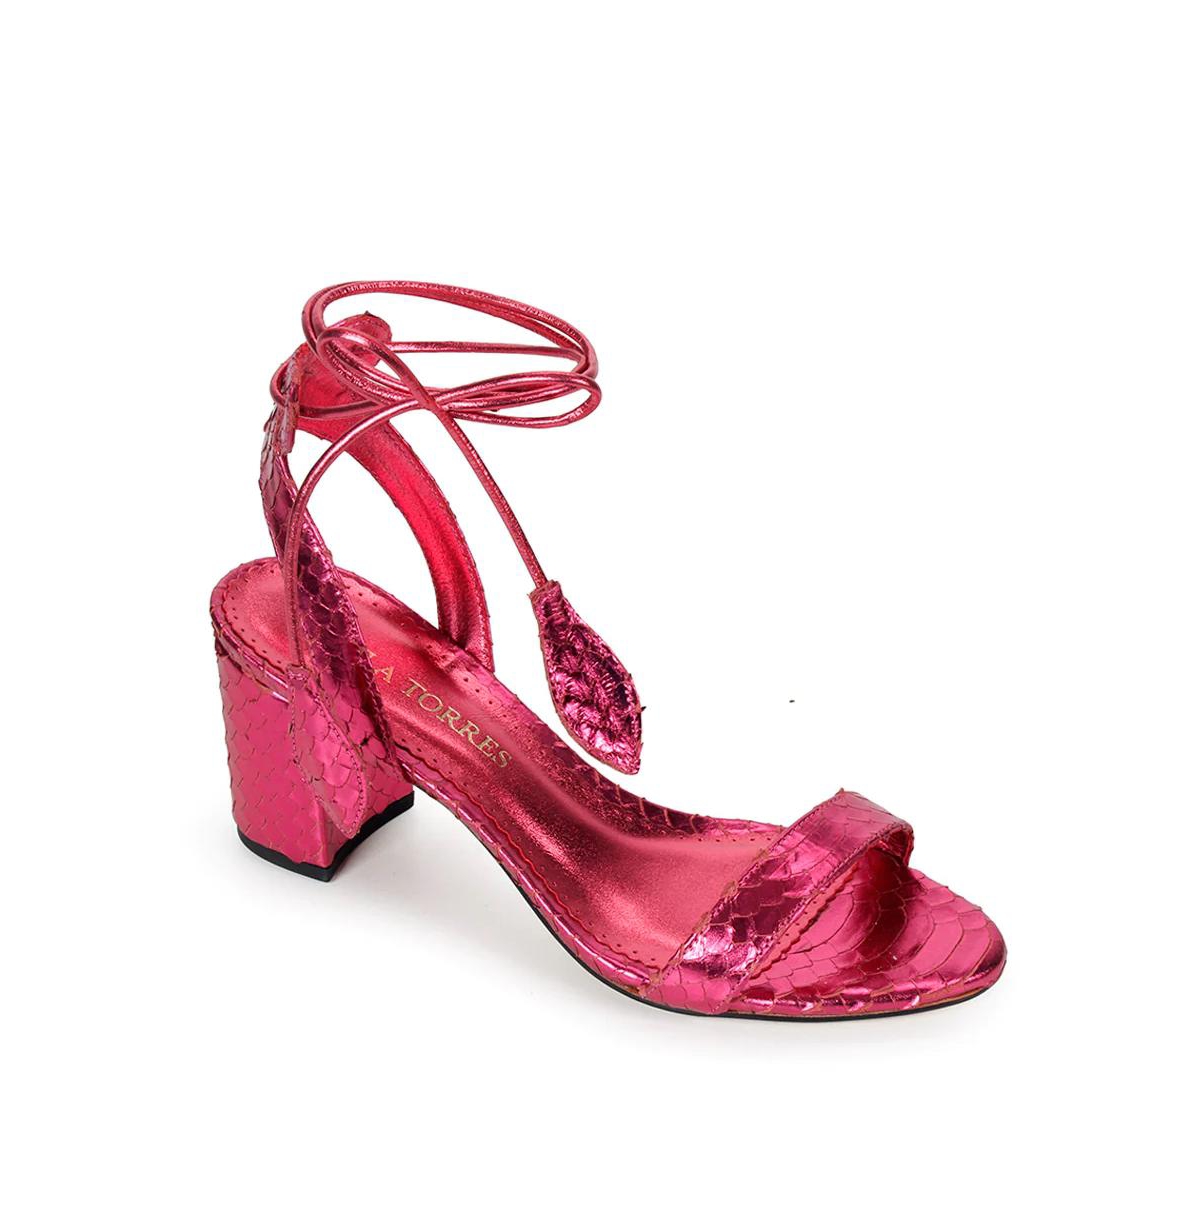 Shoes Women's Paula Block Heel Sandals - Rose